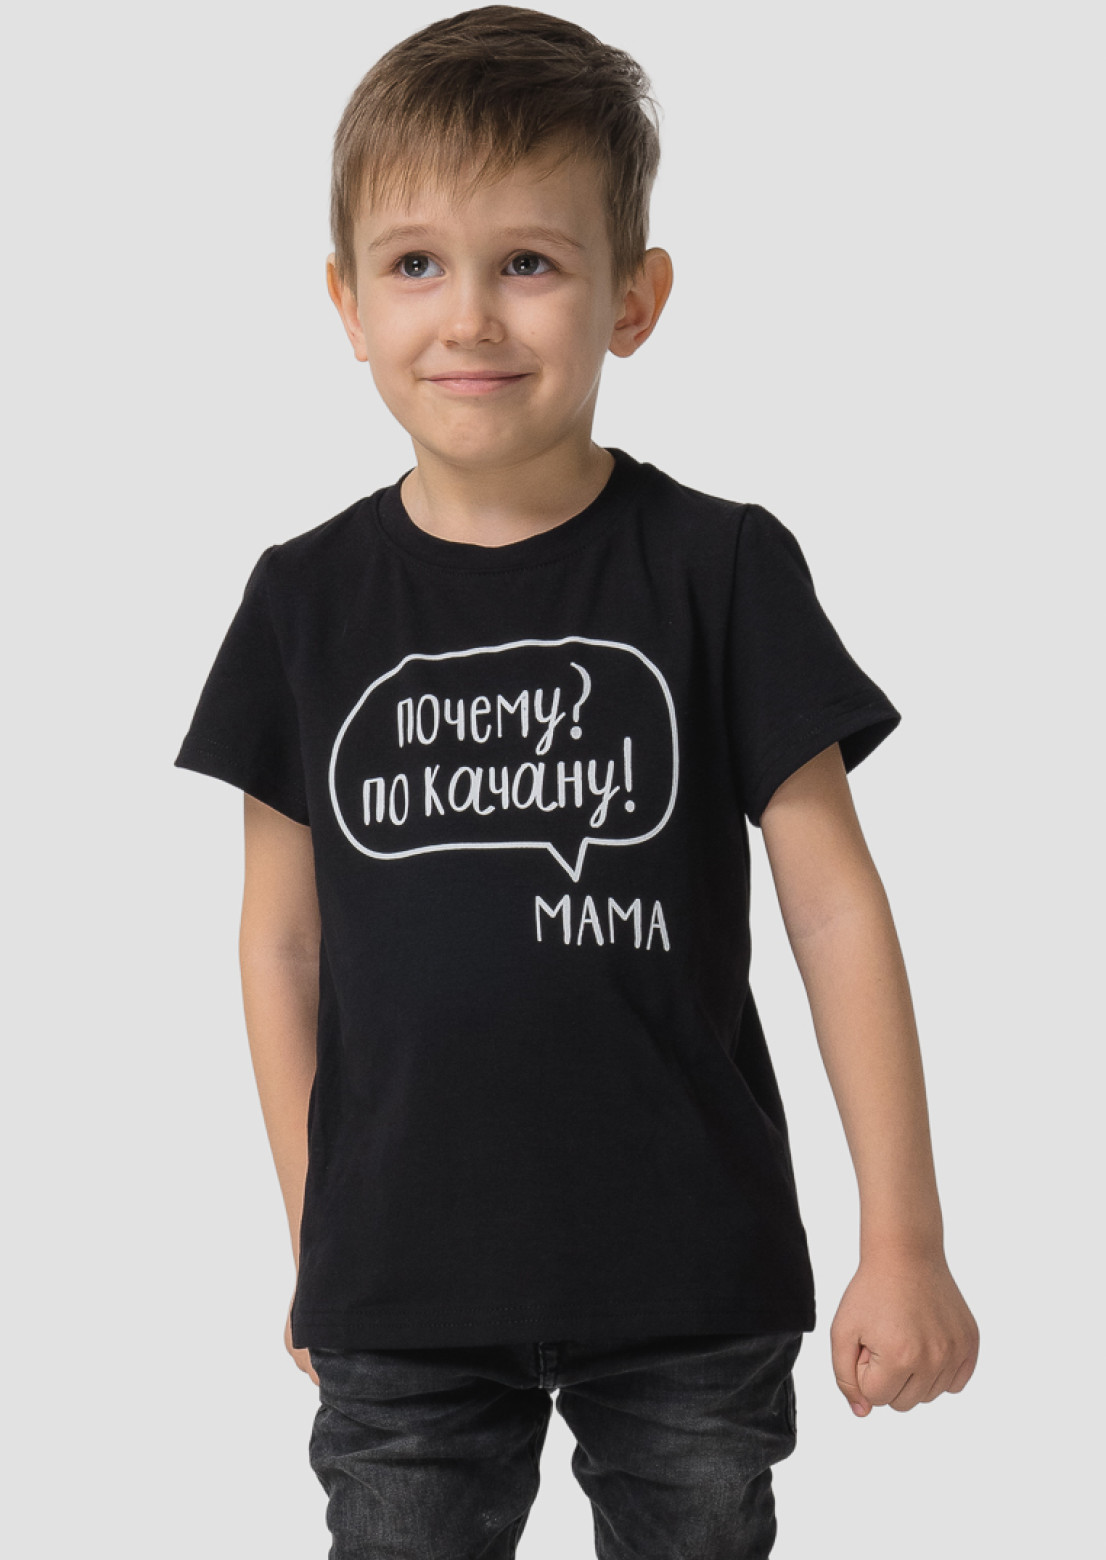 Детская футболка "Почему? По качану! Мама" чёрная